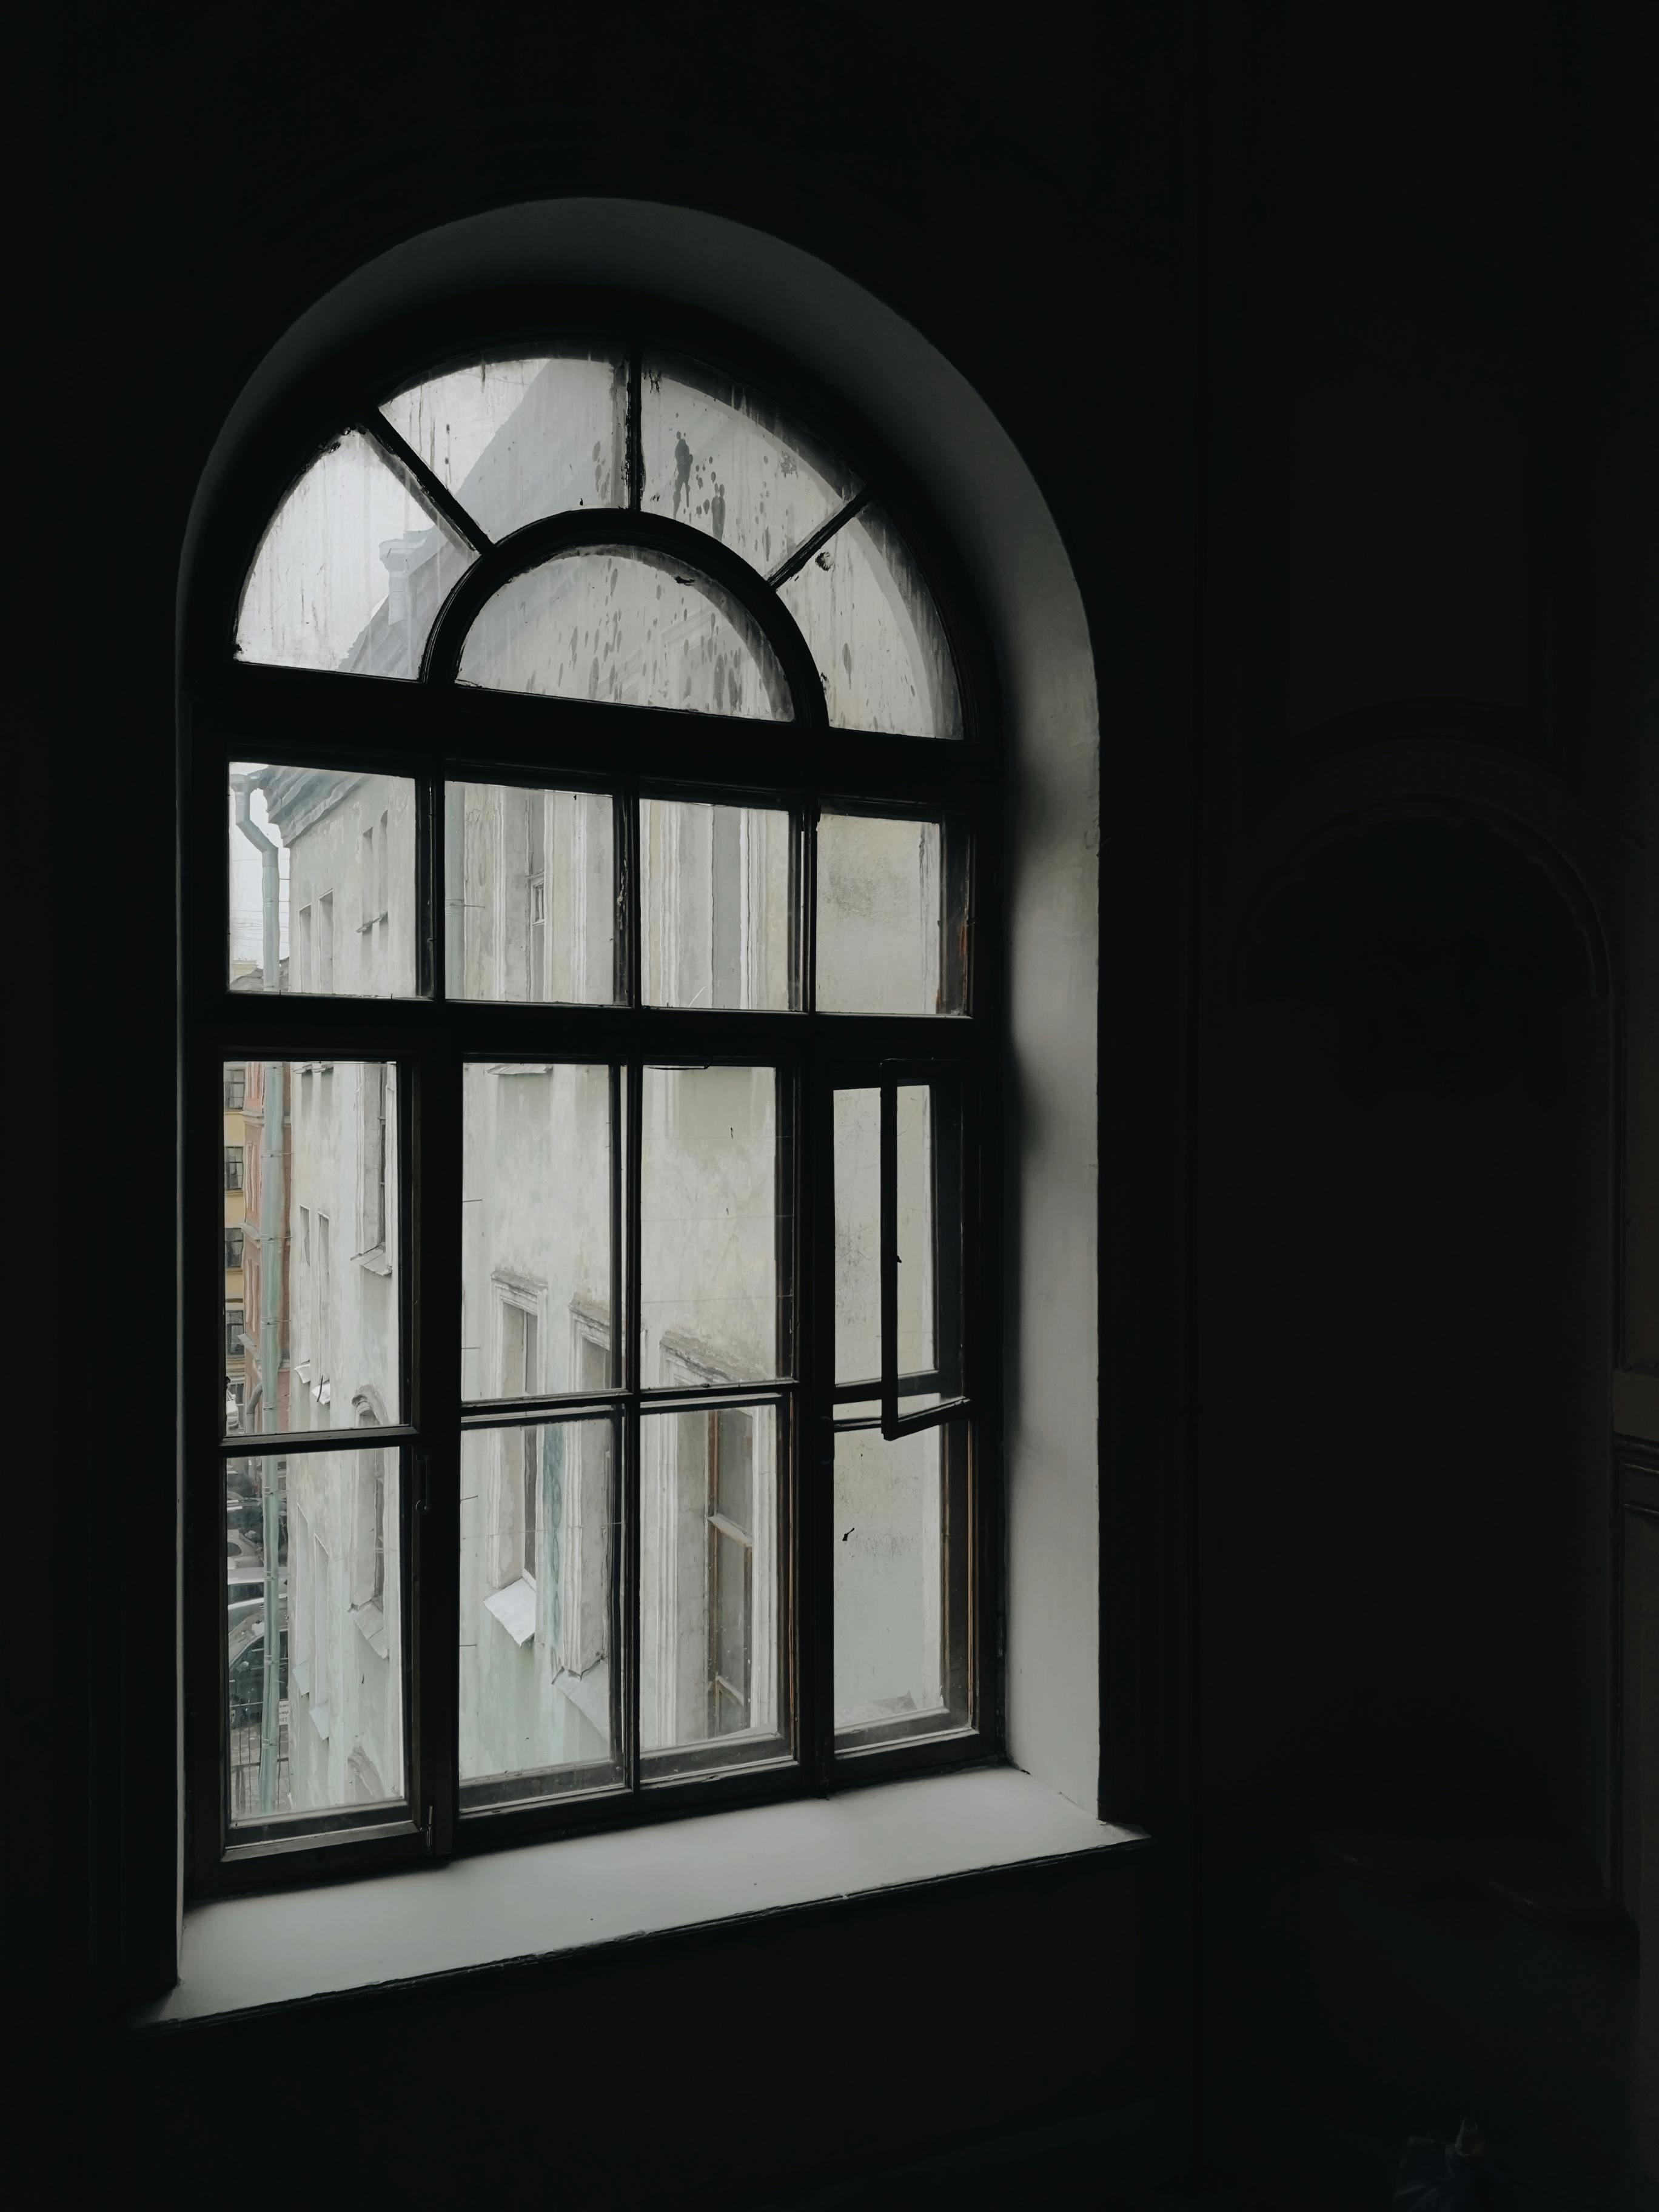 Cửa sổ kính vòm trang trí tinh tế, tạo nên một không gian sang trọng và ấn tượng. Bạn sẽ bị thu hút ngay lập tức bởi vẻ đẹp độc đáo của cửa sổ này. Hãy nhấp chuột để khám phá những hình ảnh đẹp mắt liên quan đến cửa sổ kính này.